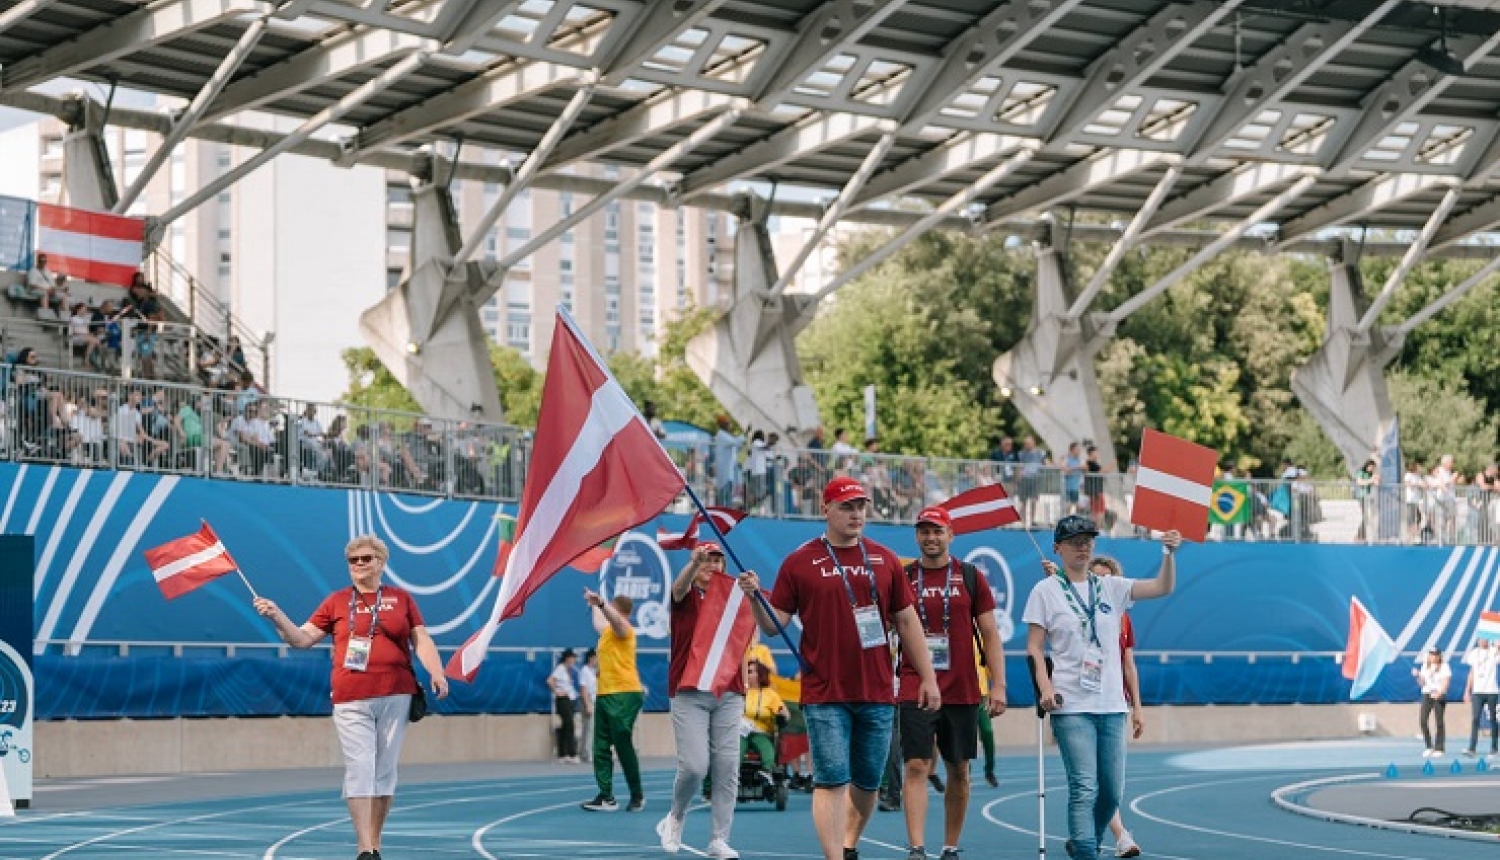 Latvijas paralimpiskās komandas pārstāvji pārvietojas pa stadionu ar Latvijas karogiem rokās